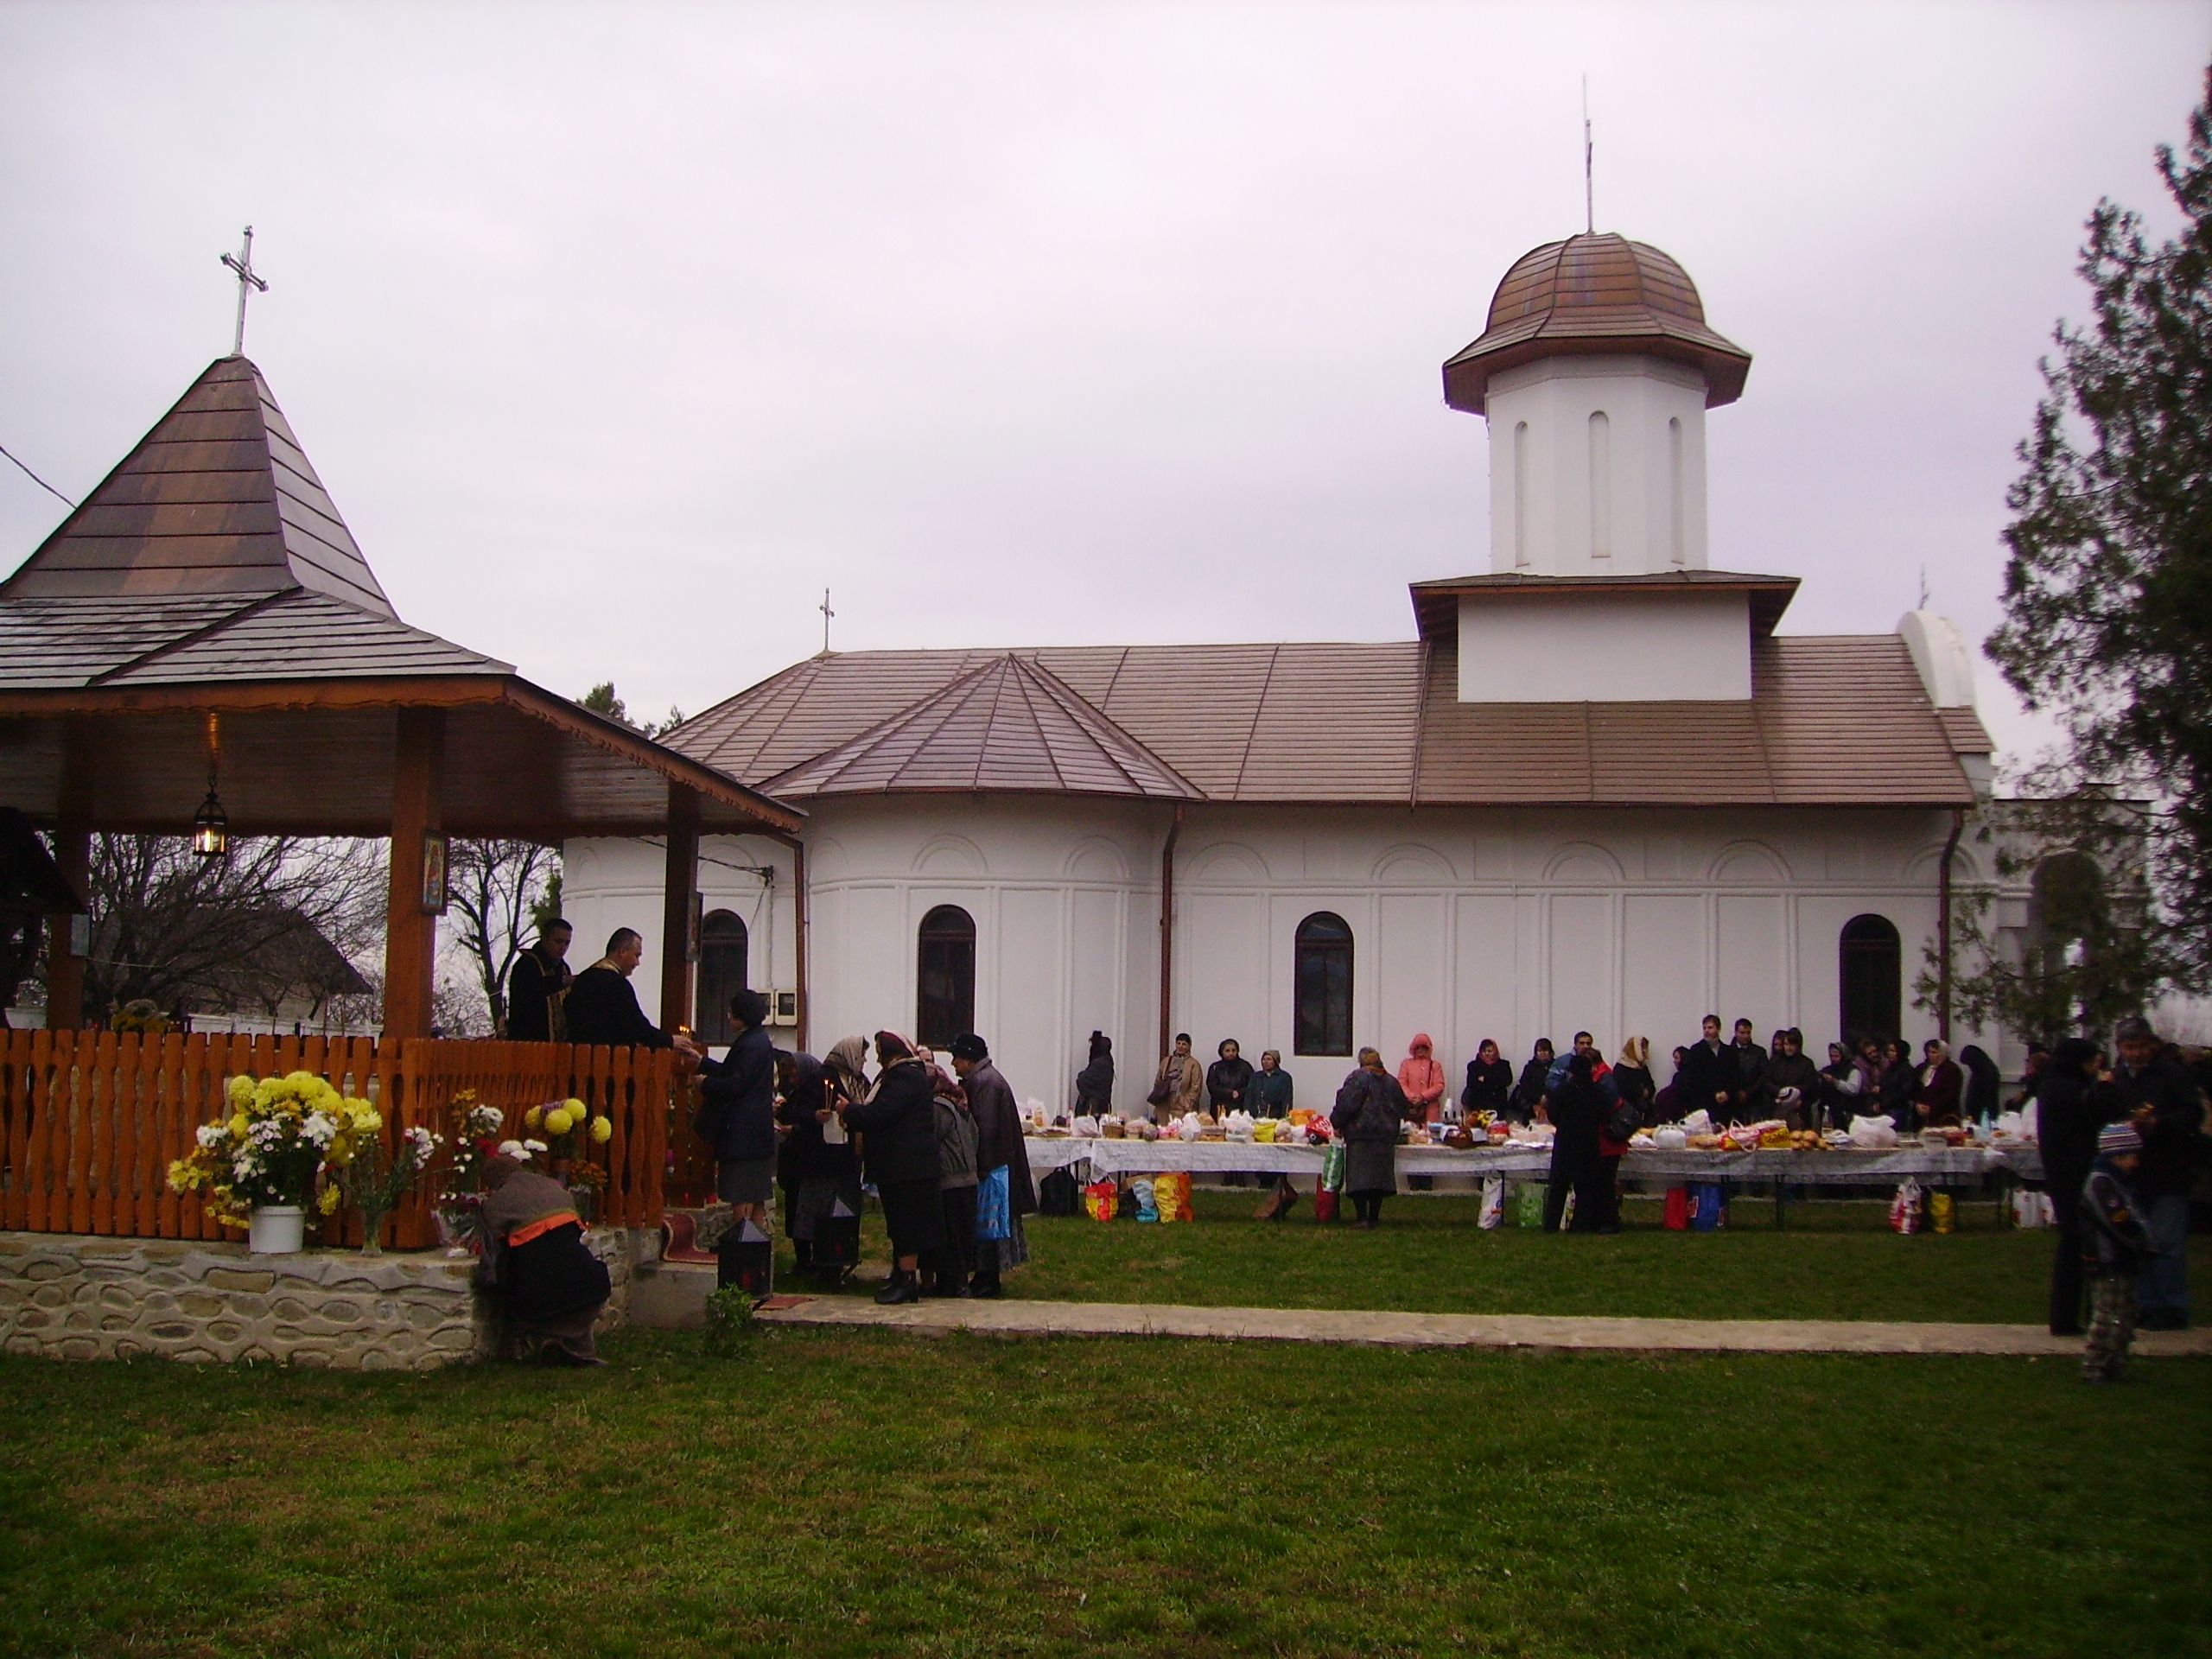 Biserica Draganescu